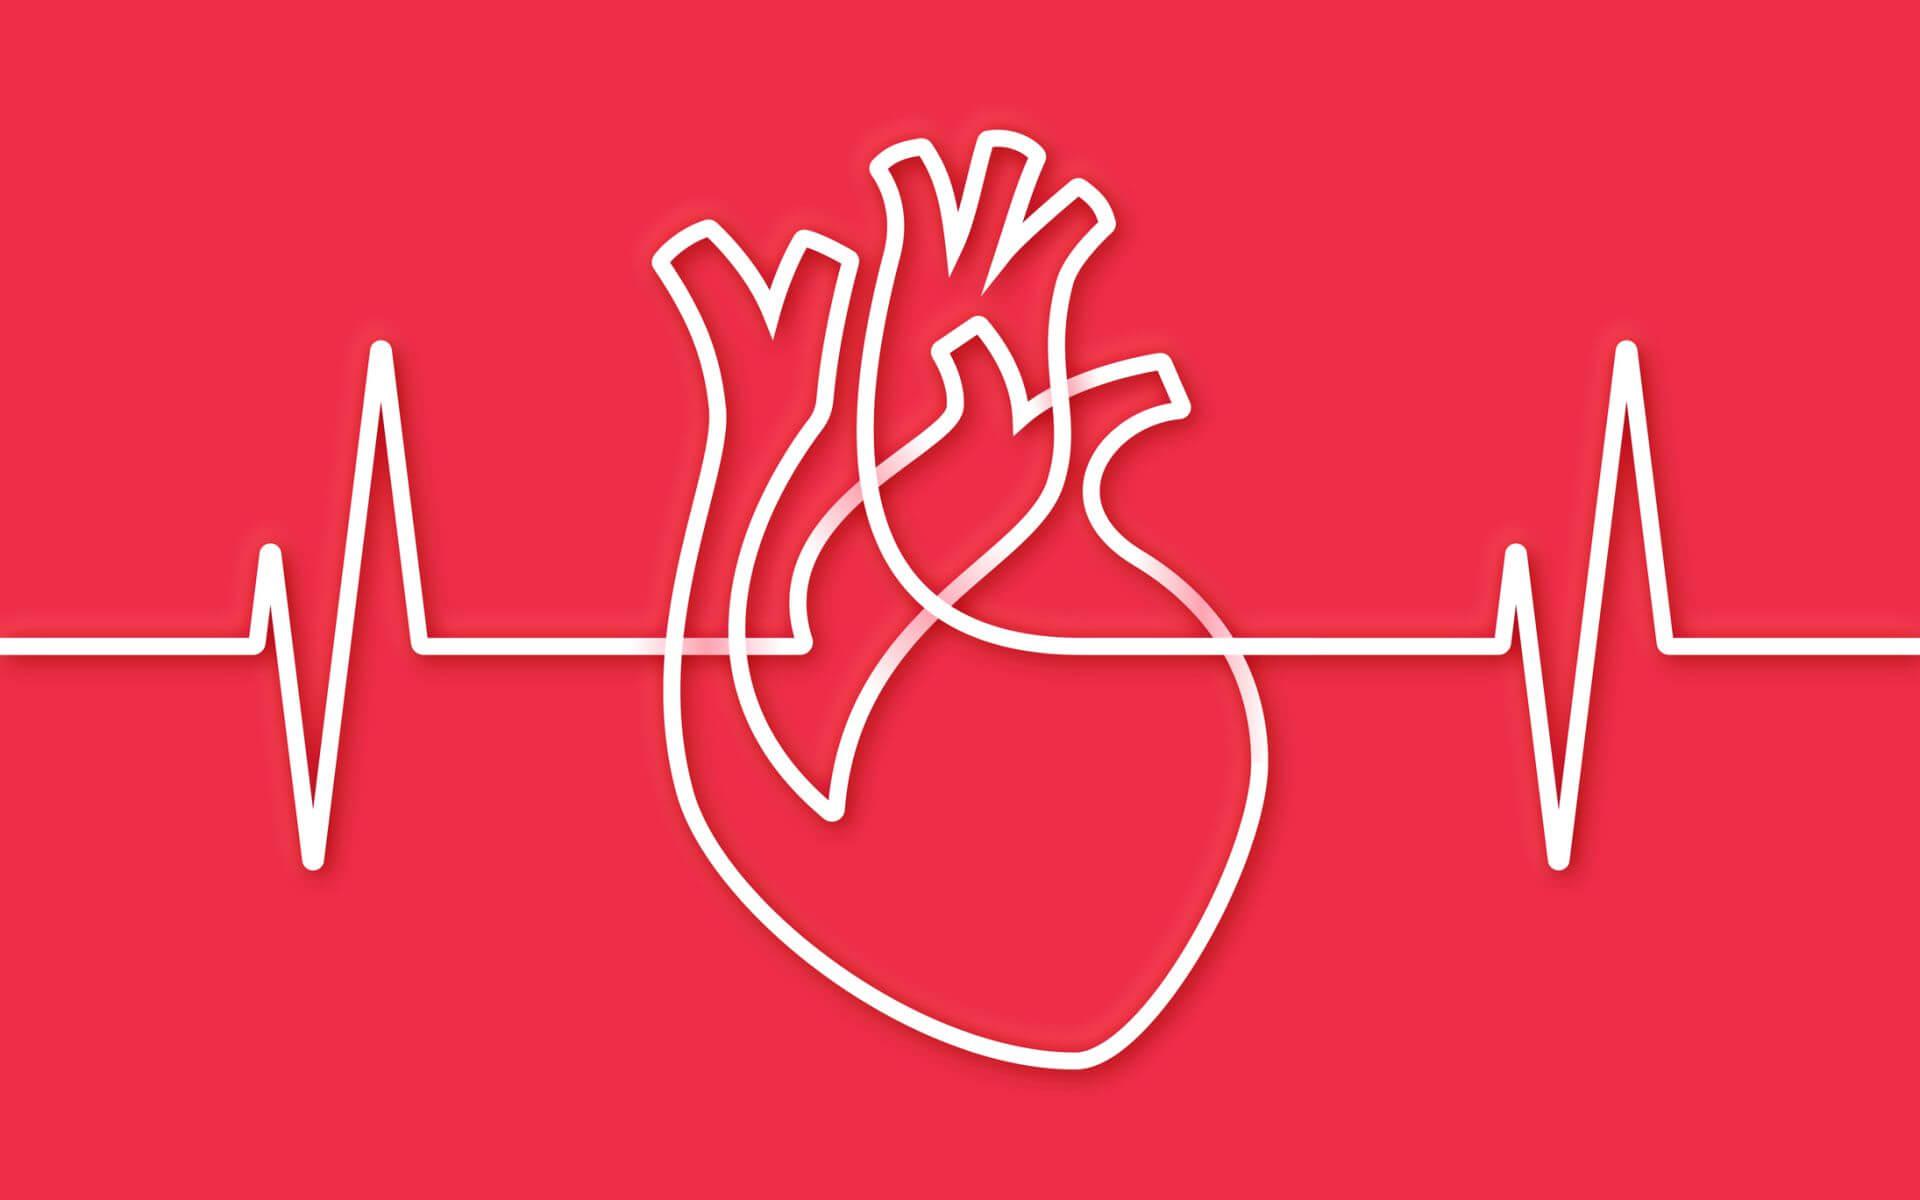 Herzrhythmusstörungen gehören abgeklärt, auch wenn sie bereits wieder vorbei sind.